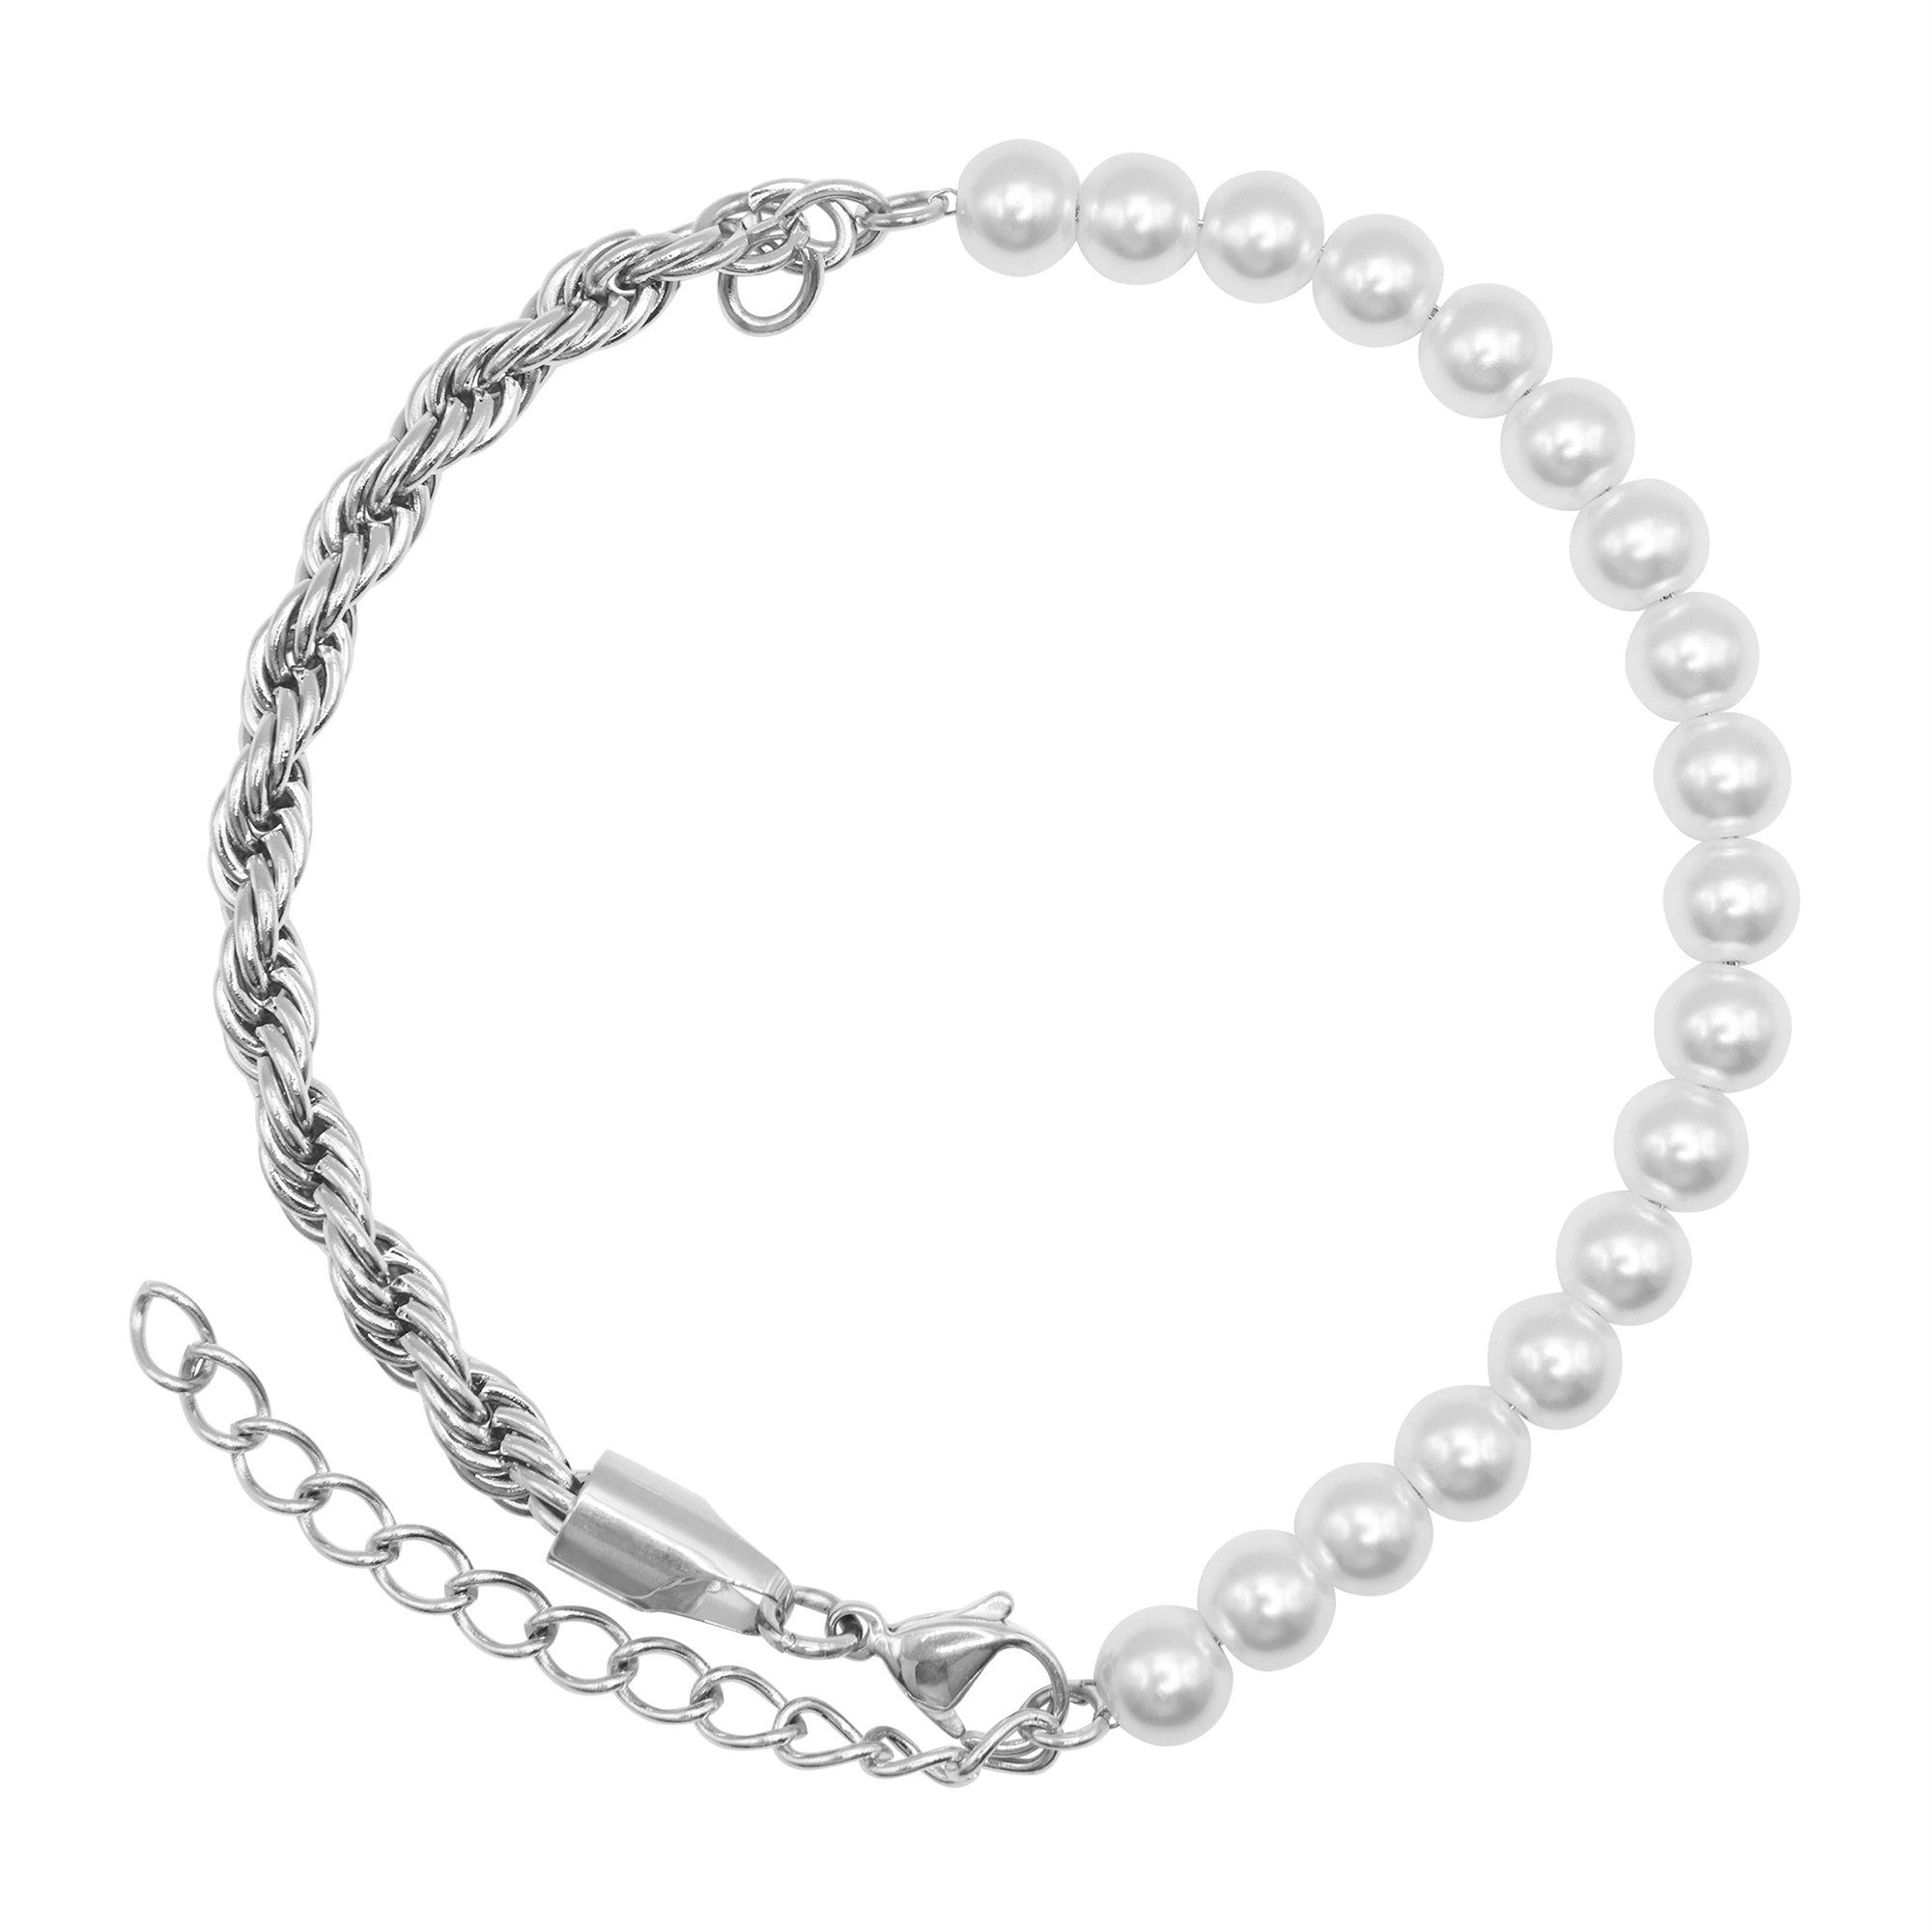 poliert Material und Heideman Edelstahl Mix Jill - inkl. Geschenkverpackung), Perle Armband (Armband, silberfarben